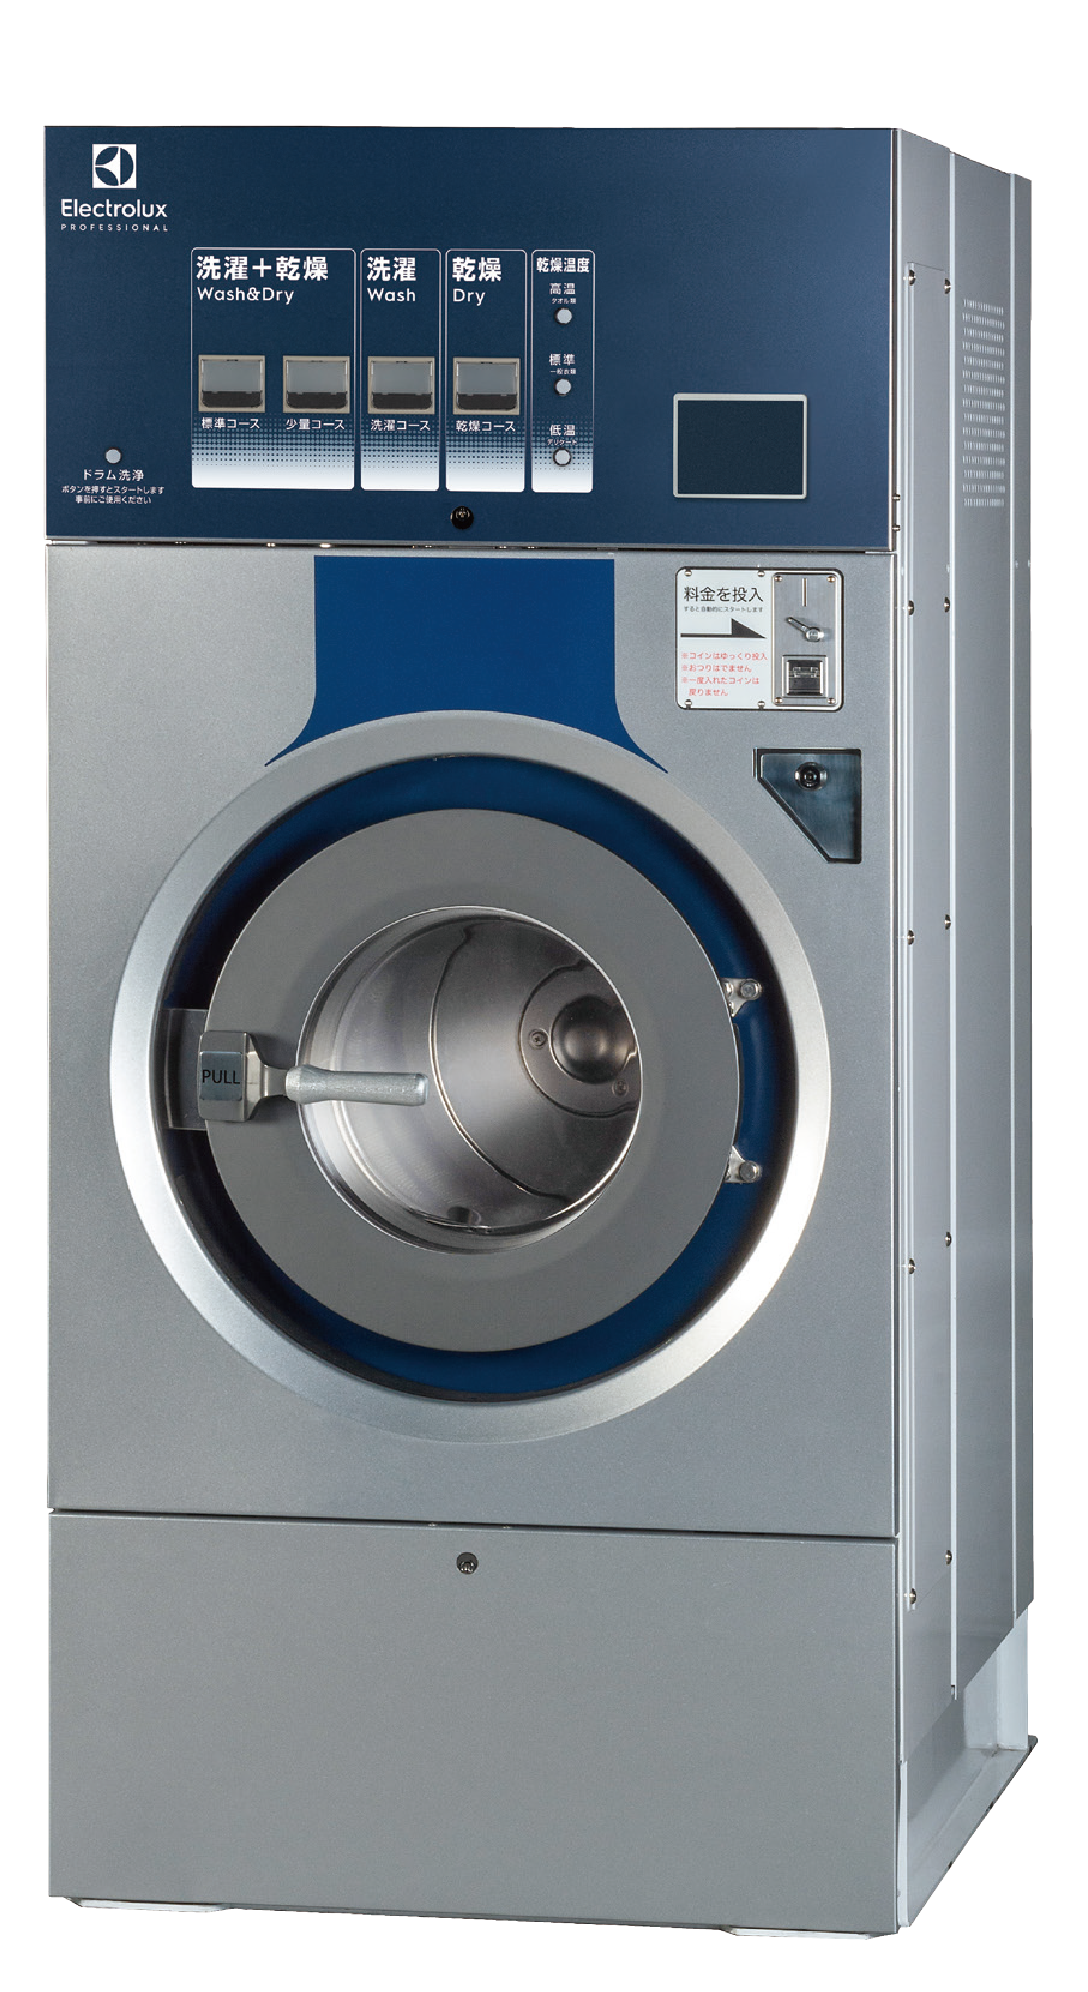 コインランドリー向けline 6000 洗濯乾燥機 新発売 エレクトロラックス プロフェッショナル ジャパン株式会社のプレスリリース